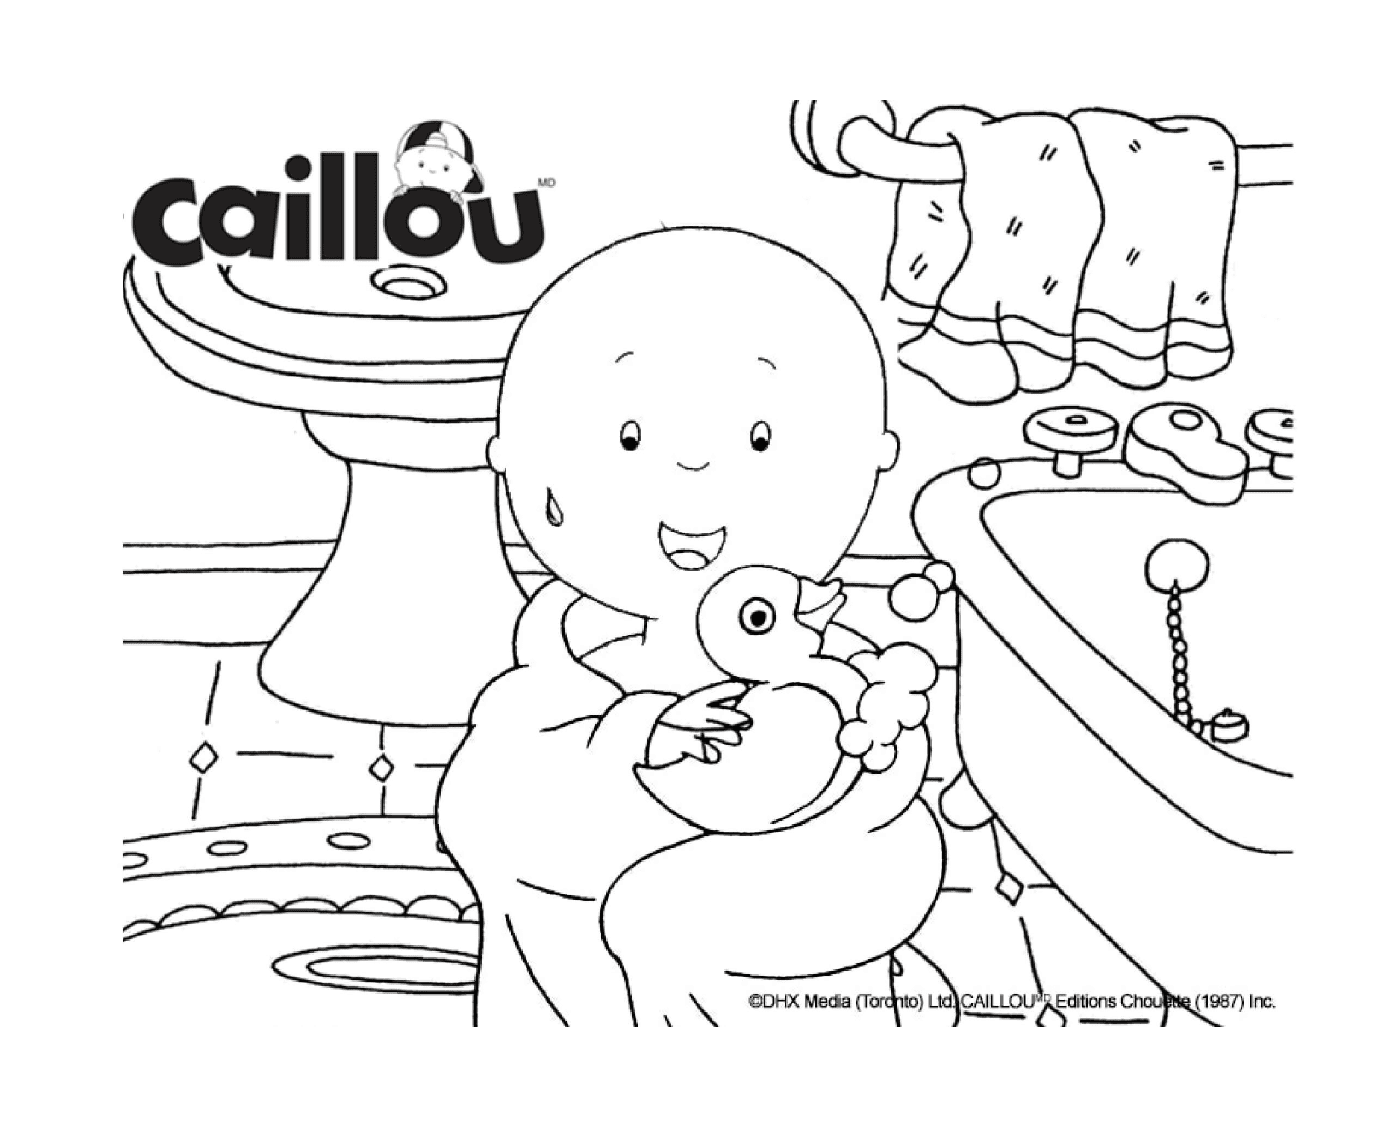  يَأْخذُ Calllou حمامه مَع بطةِه 